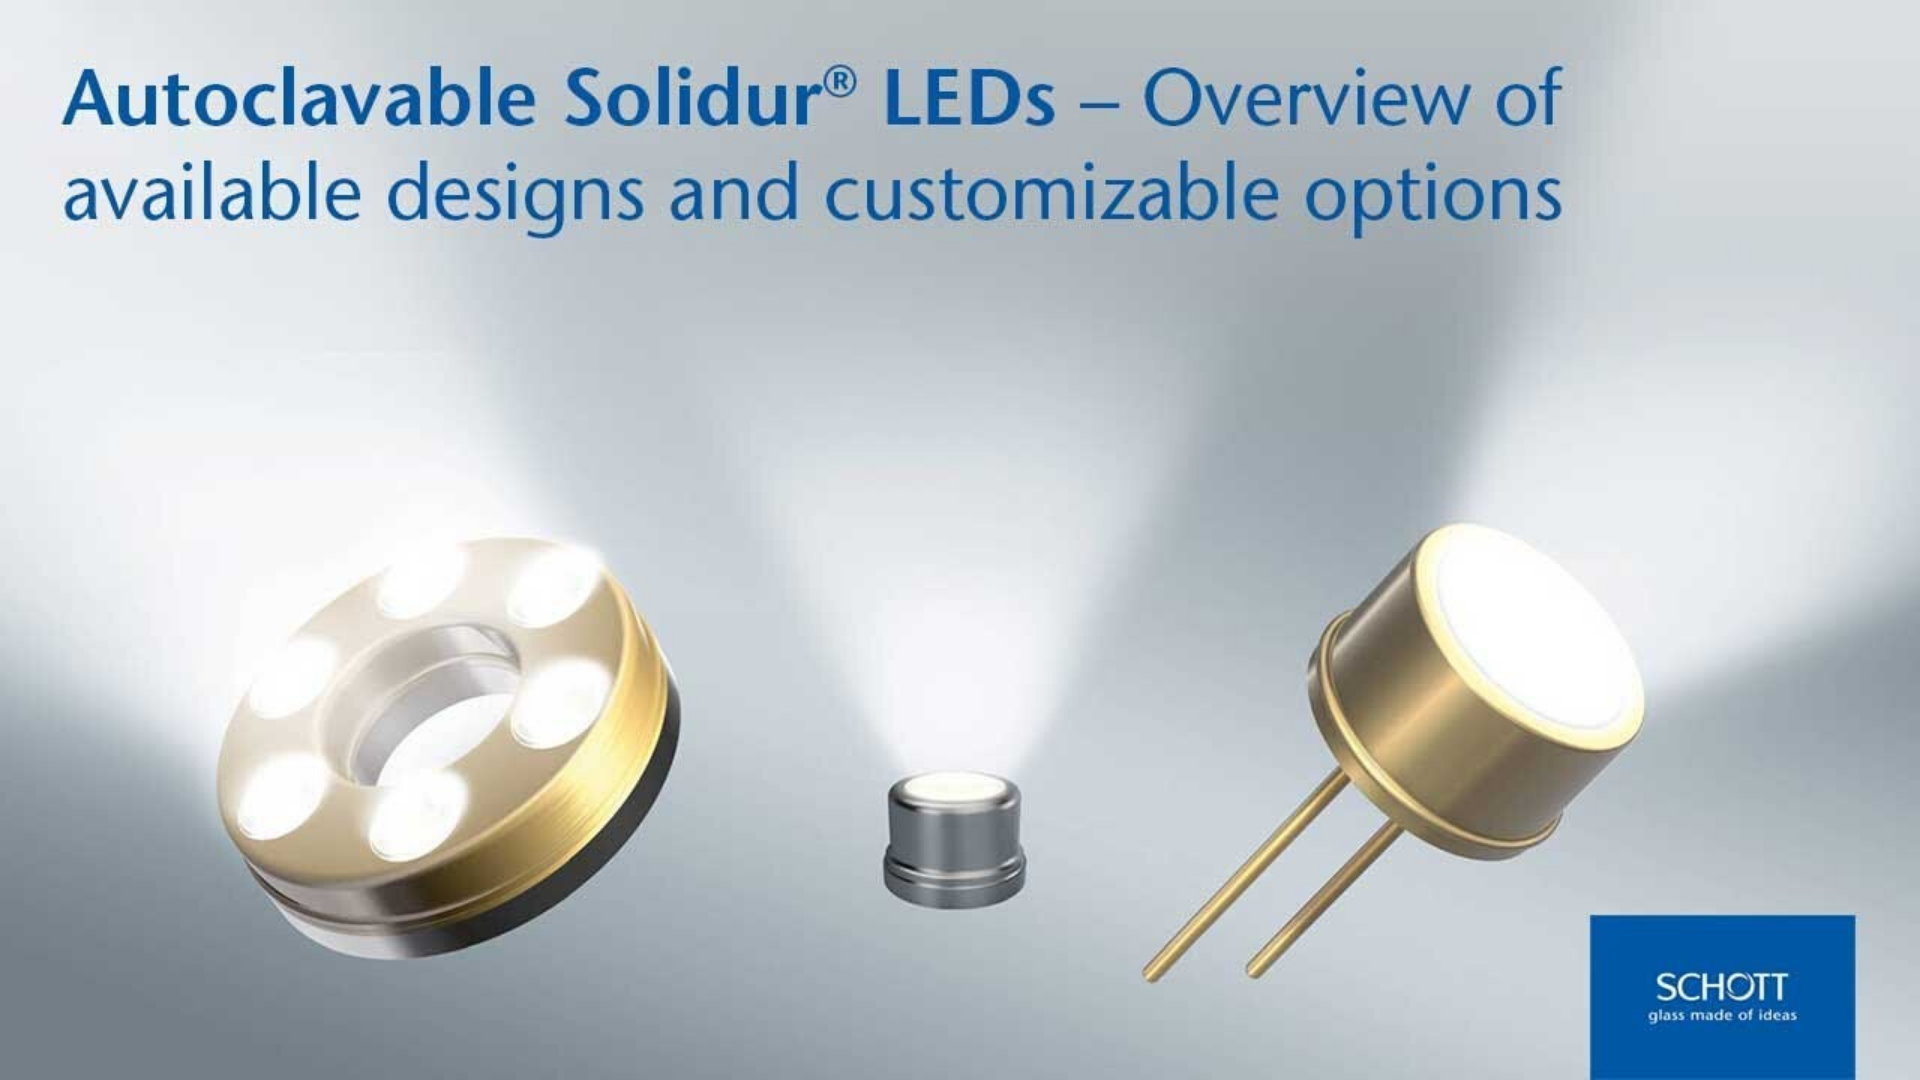 Cliquez ici pour en savoir plus sur la gamme de LED SCHOTT Solidur® autoclavables et leurs options personnalisables